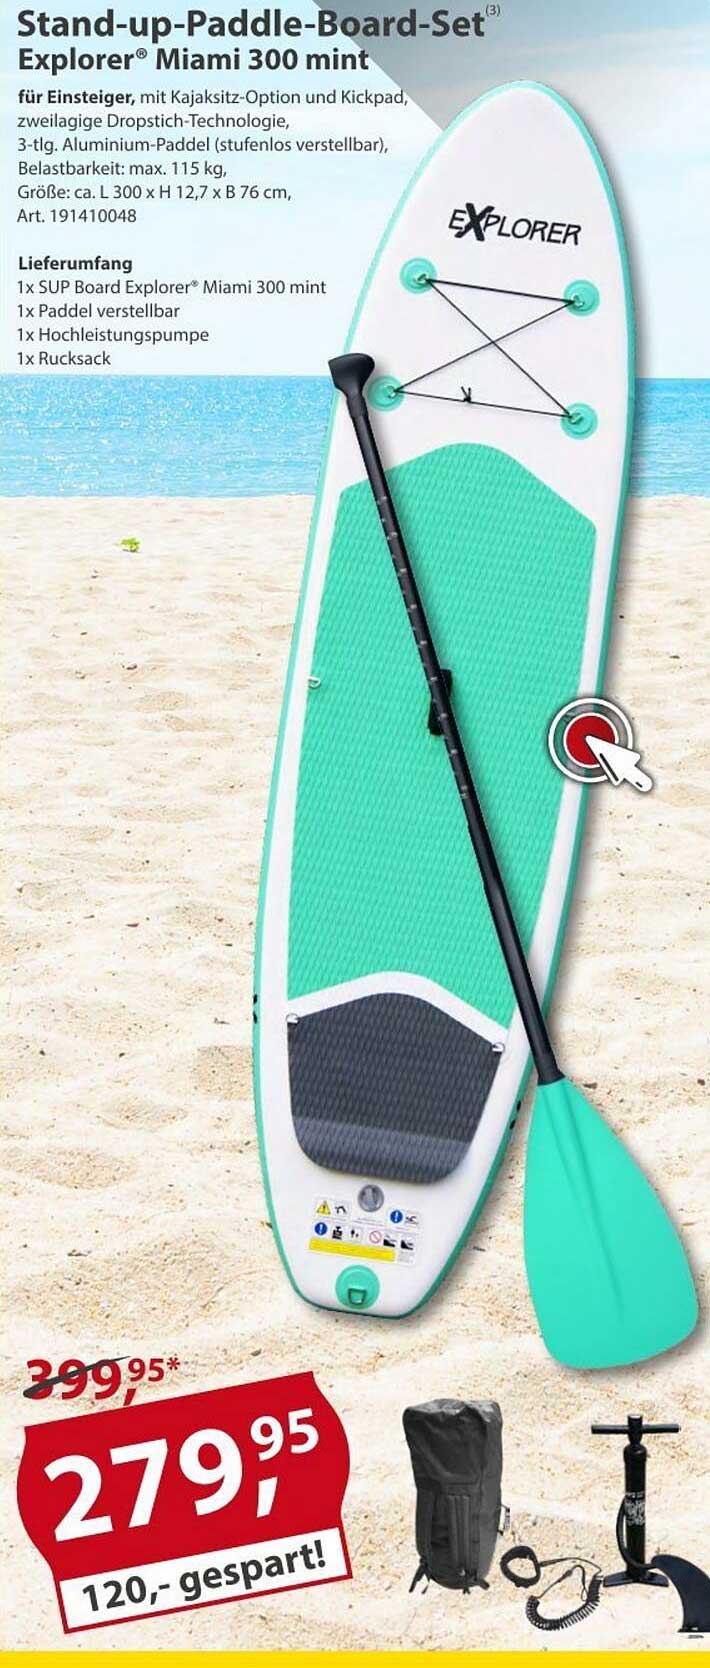 Baumarkt bei Explorer Angebot 300 Stand-up-paddle-board-set Miami Sonderpreis